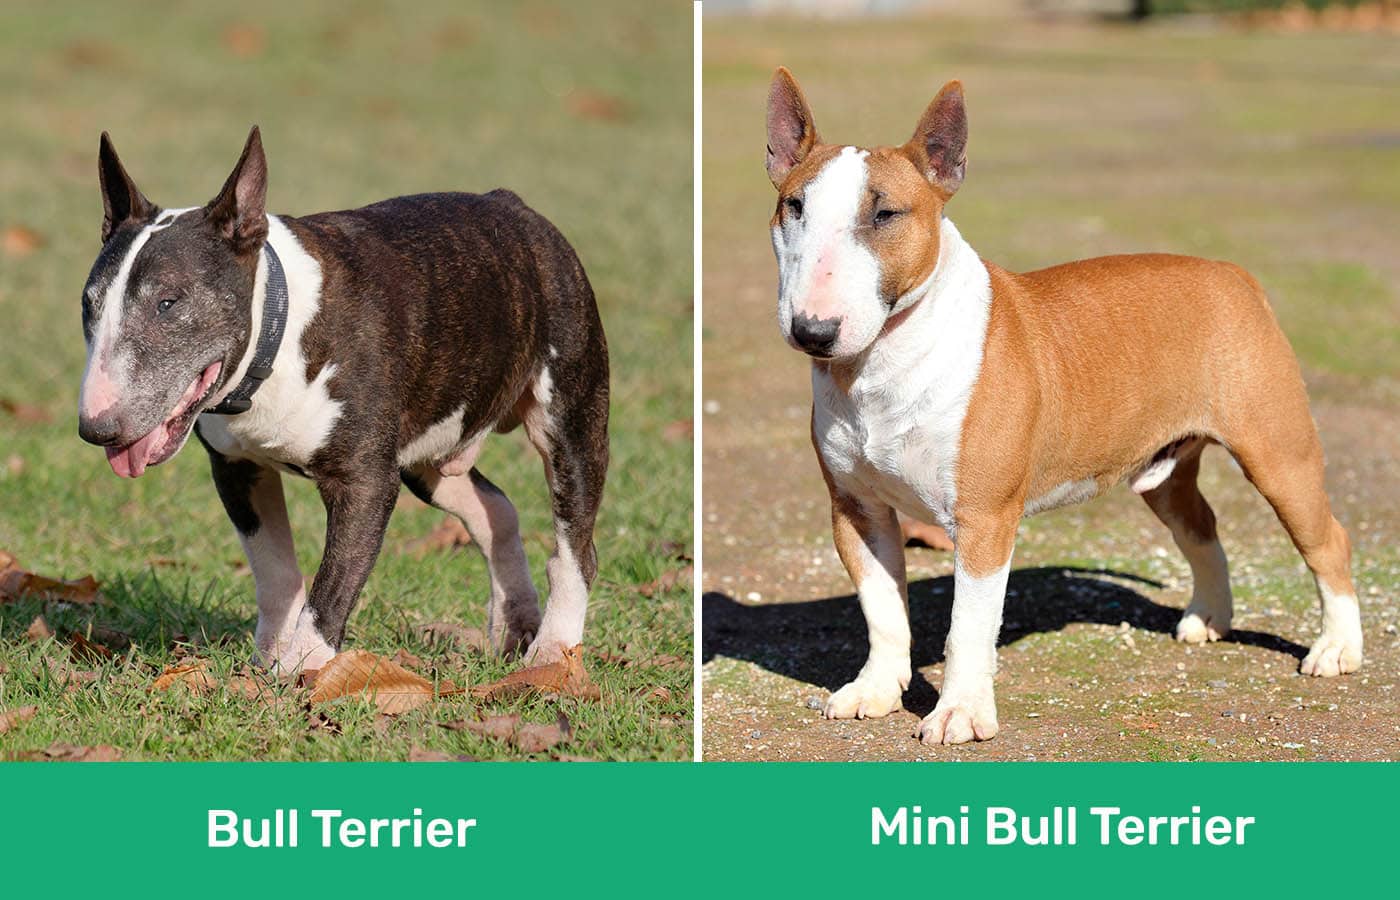 Bull Terrier vs Mini Bull Terrier side by side